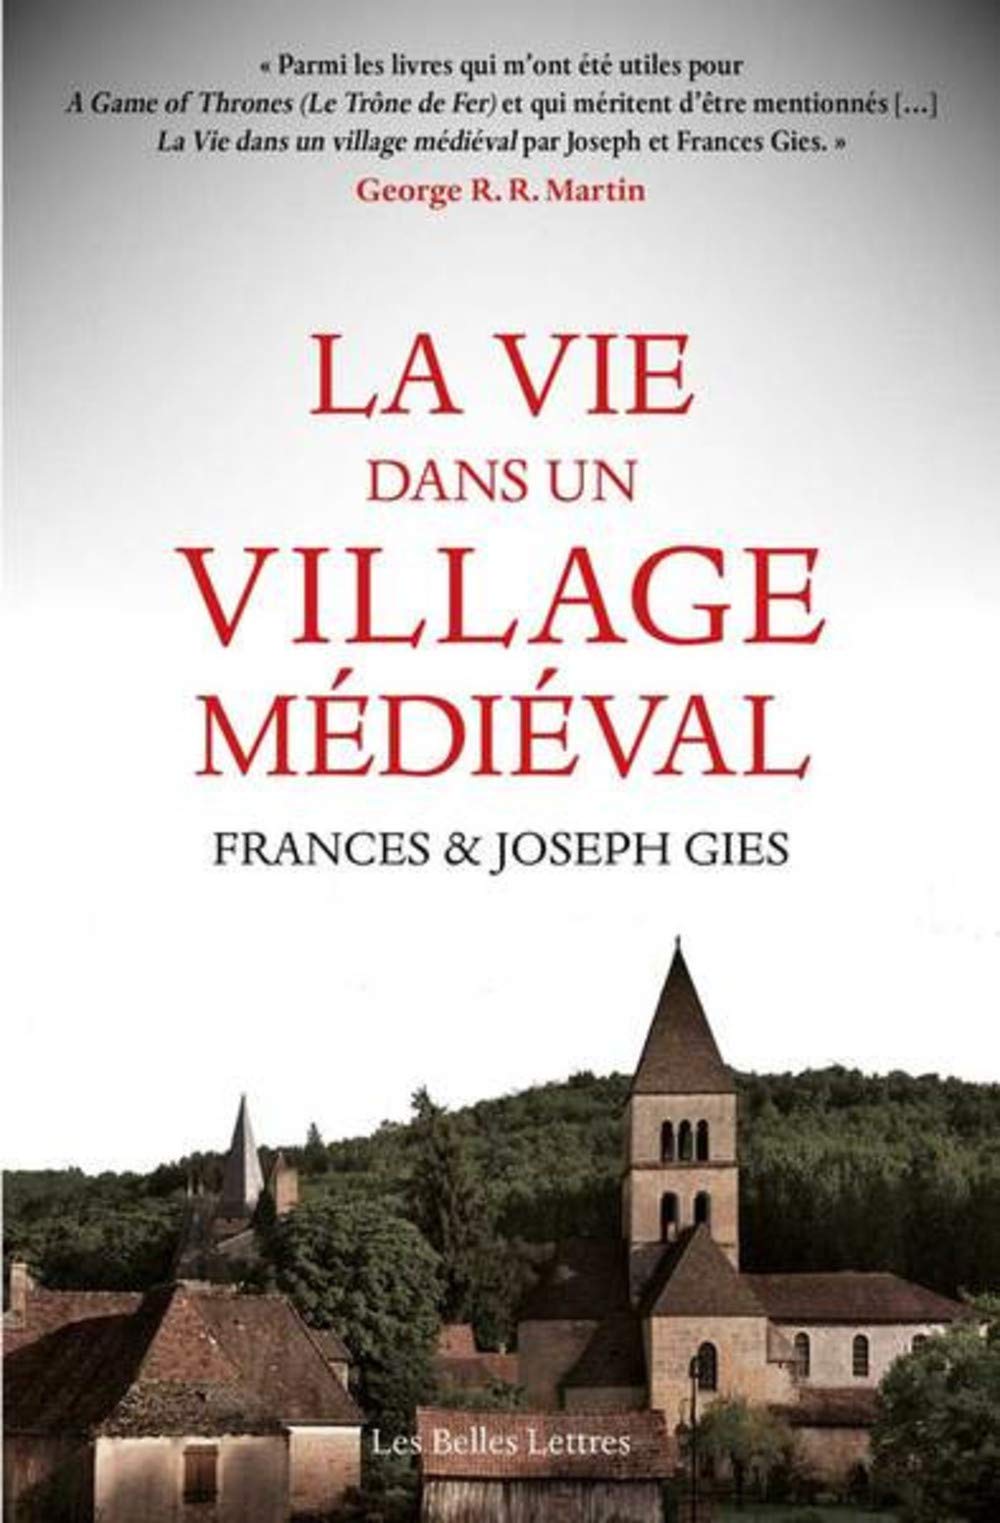 La vie dans un village médiéval, 2020, 320 p.